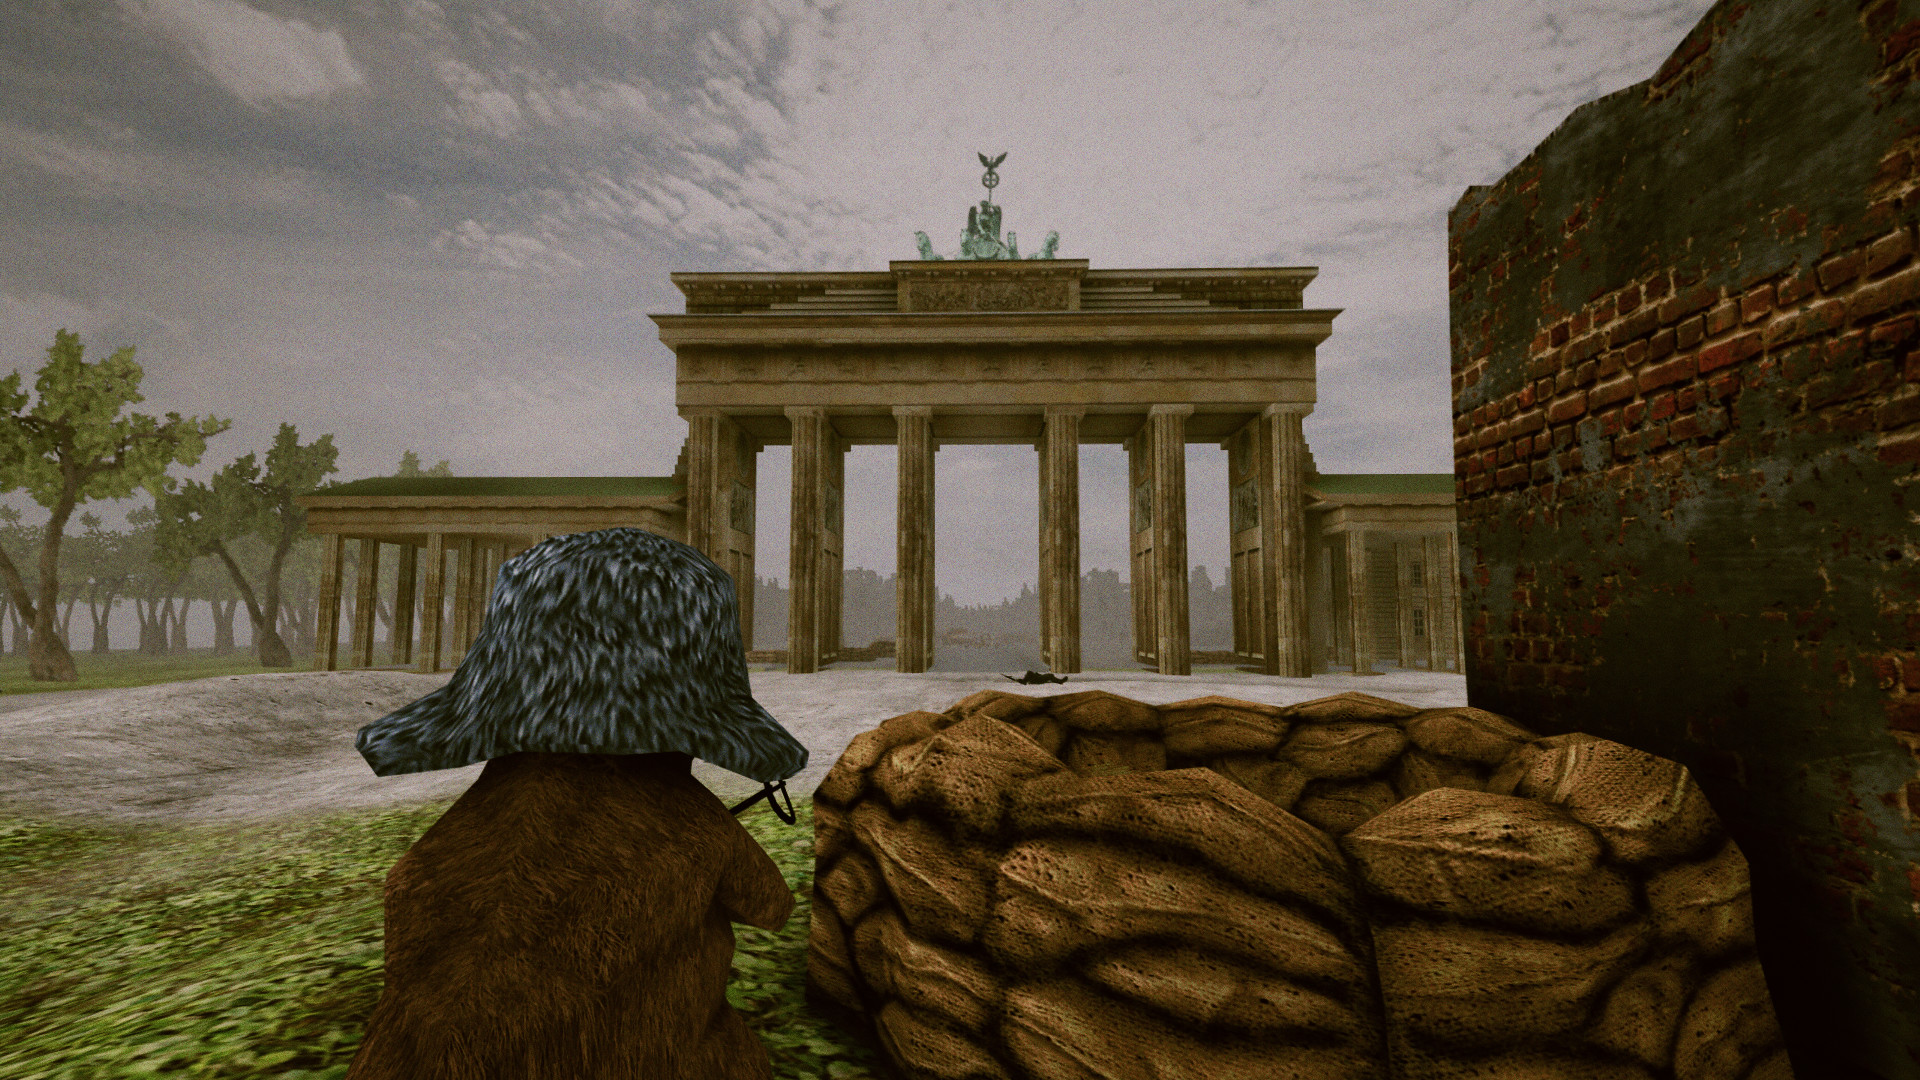 BEAR, VODKA, FALL OF BERLIN! ? screenshot